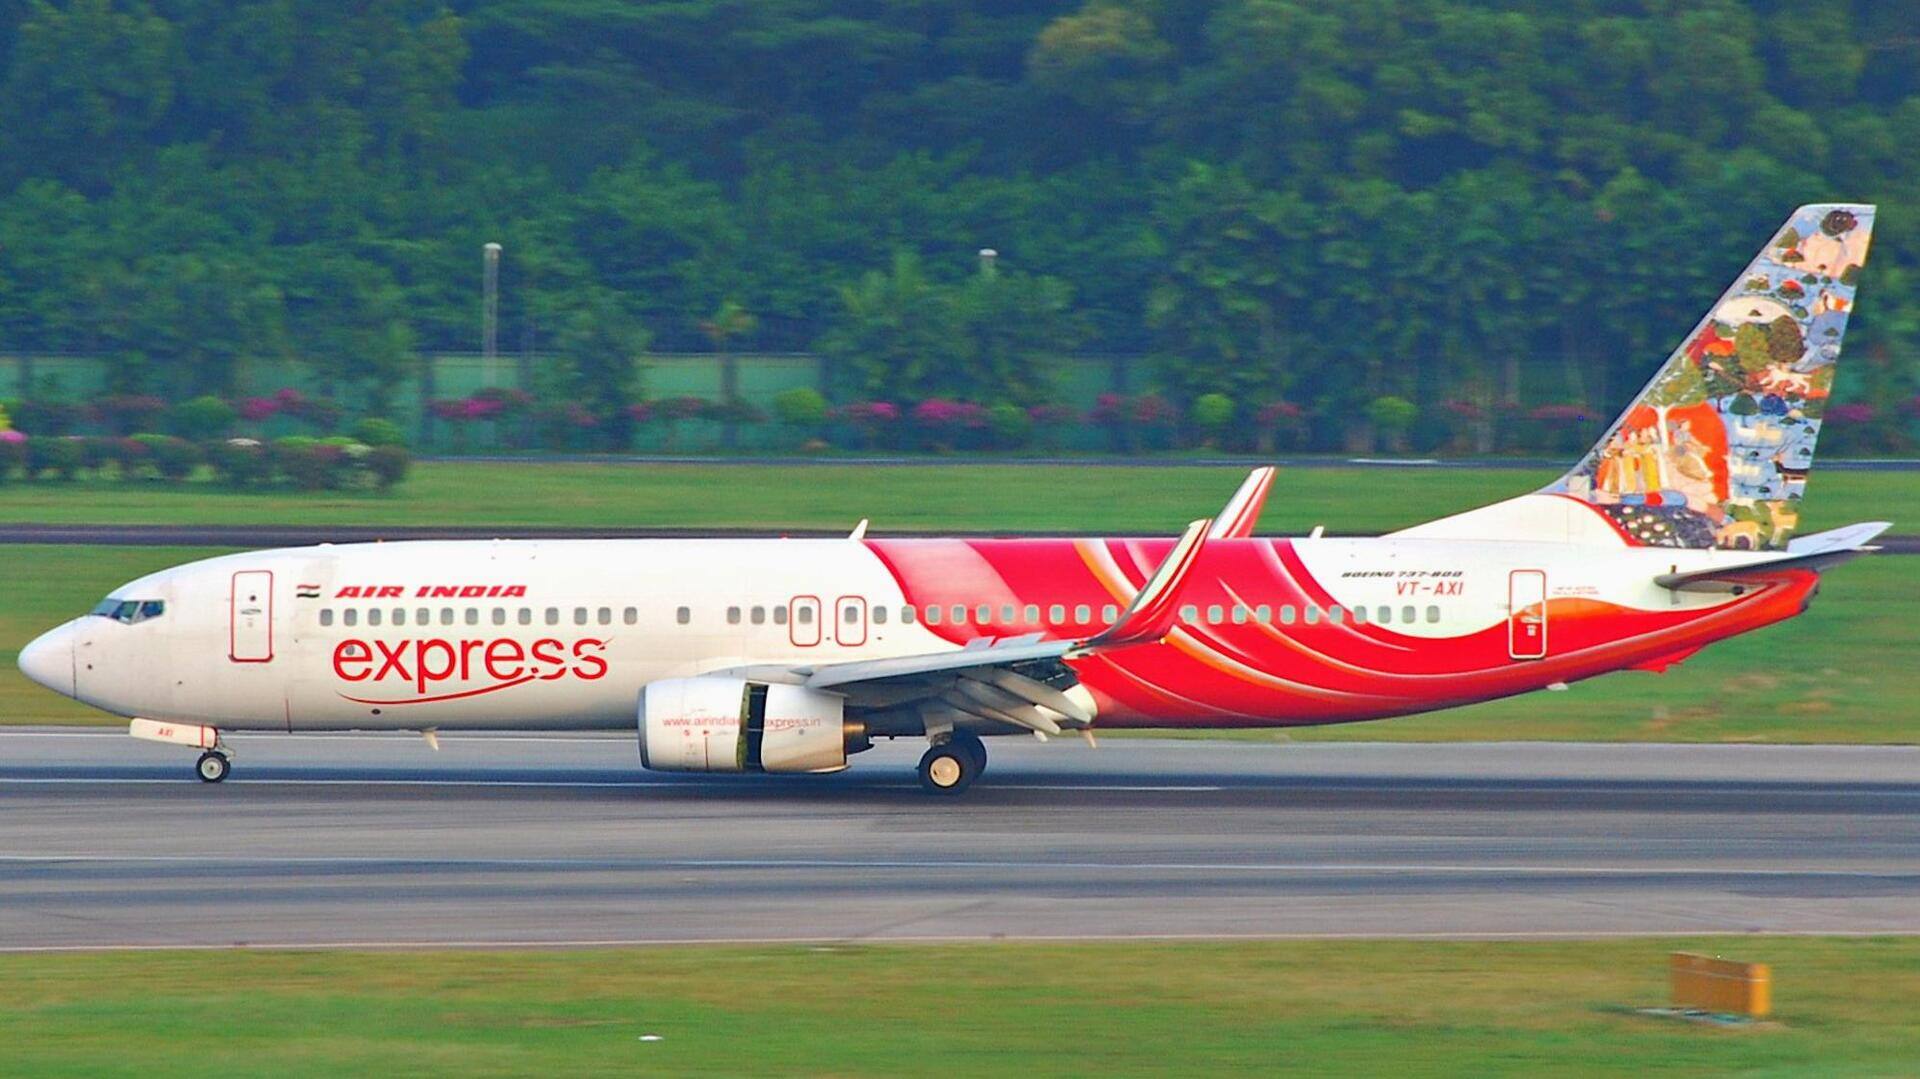 एयर इंडिया एक्सप्रेस की त्रिची-शारजाह फ्लाइट में तकनीकी खराबी, केरल में इमरजेंसी लैंडिंग